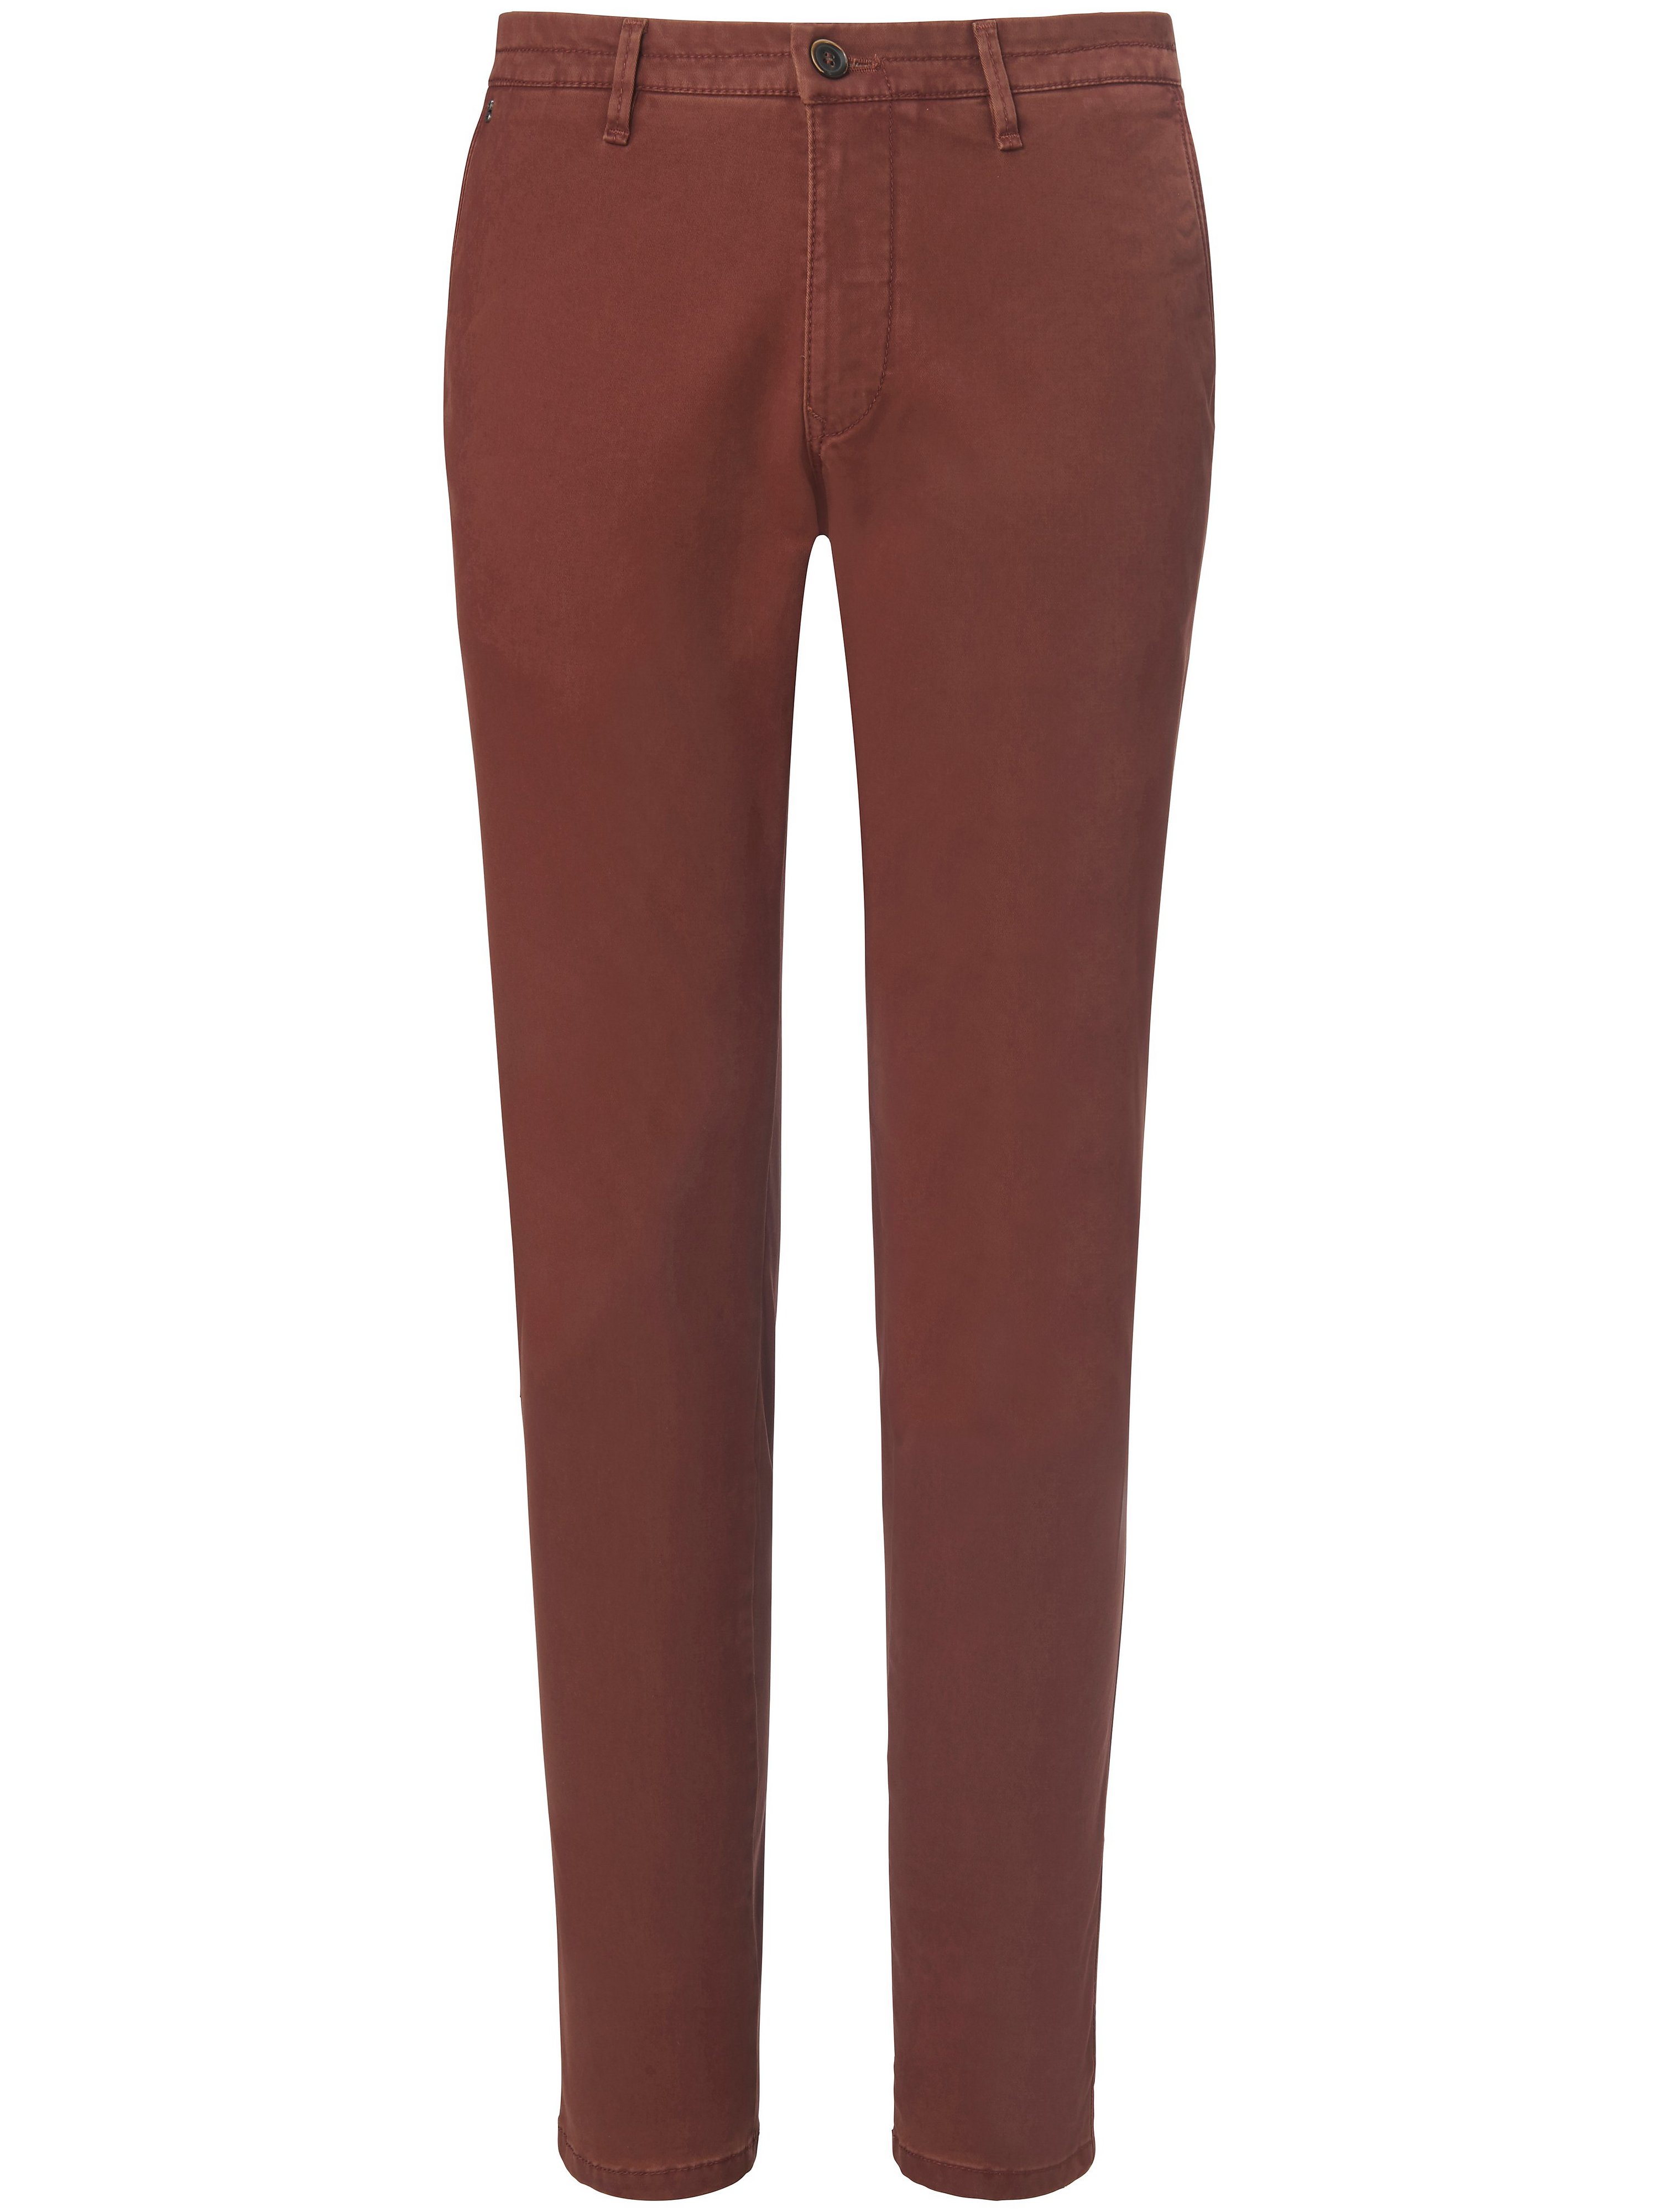 Le pantalon coupe Slim Fit modèle Sterling  gardeur marron taille 50